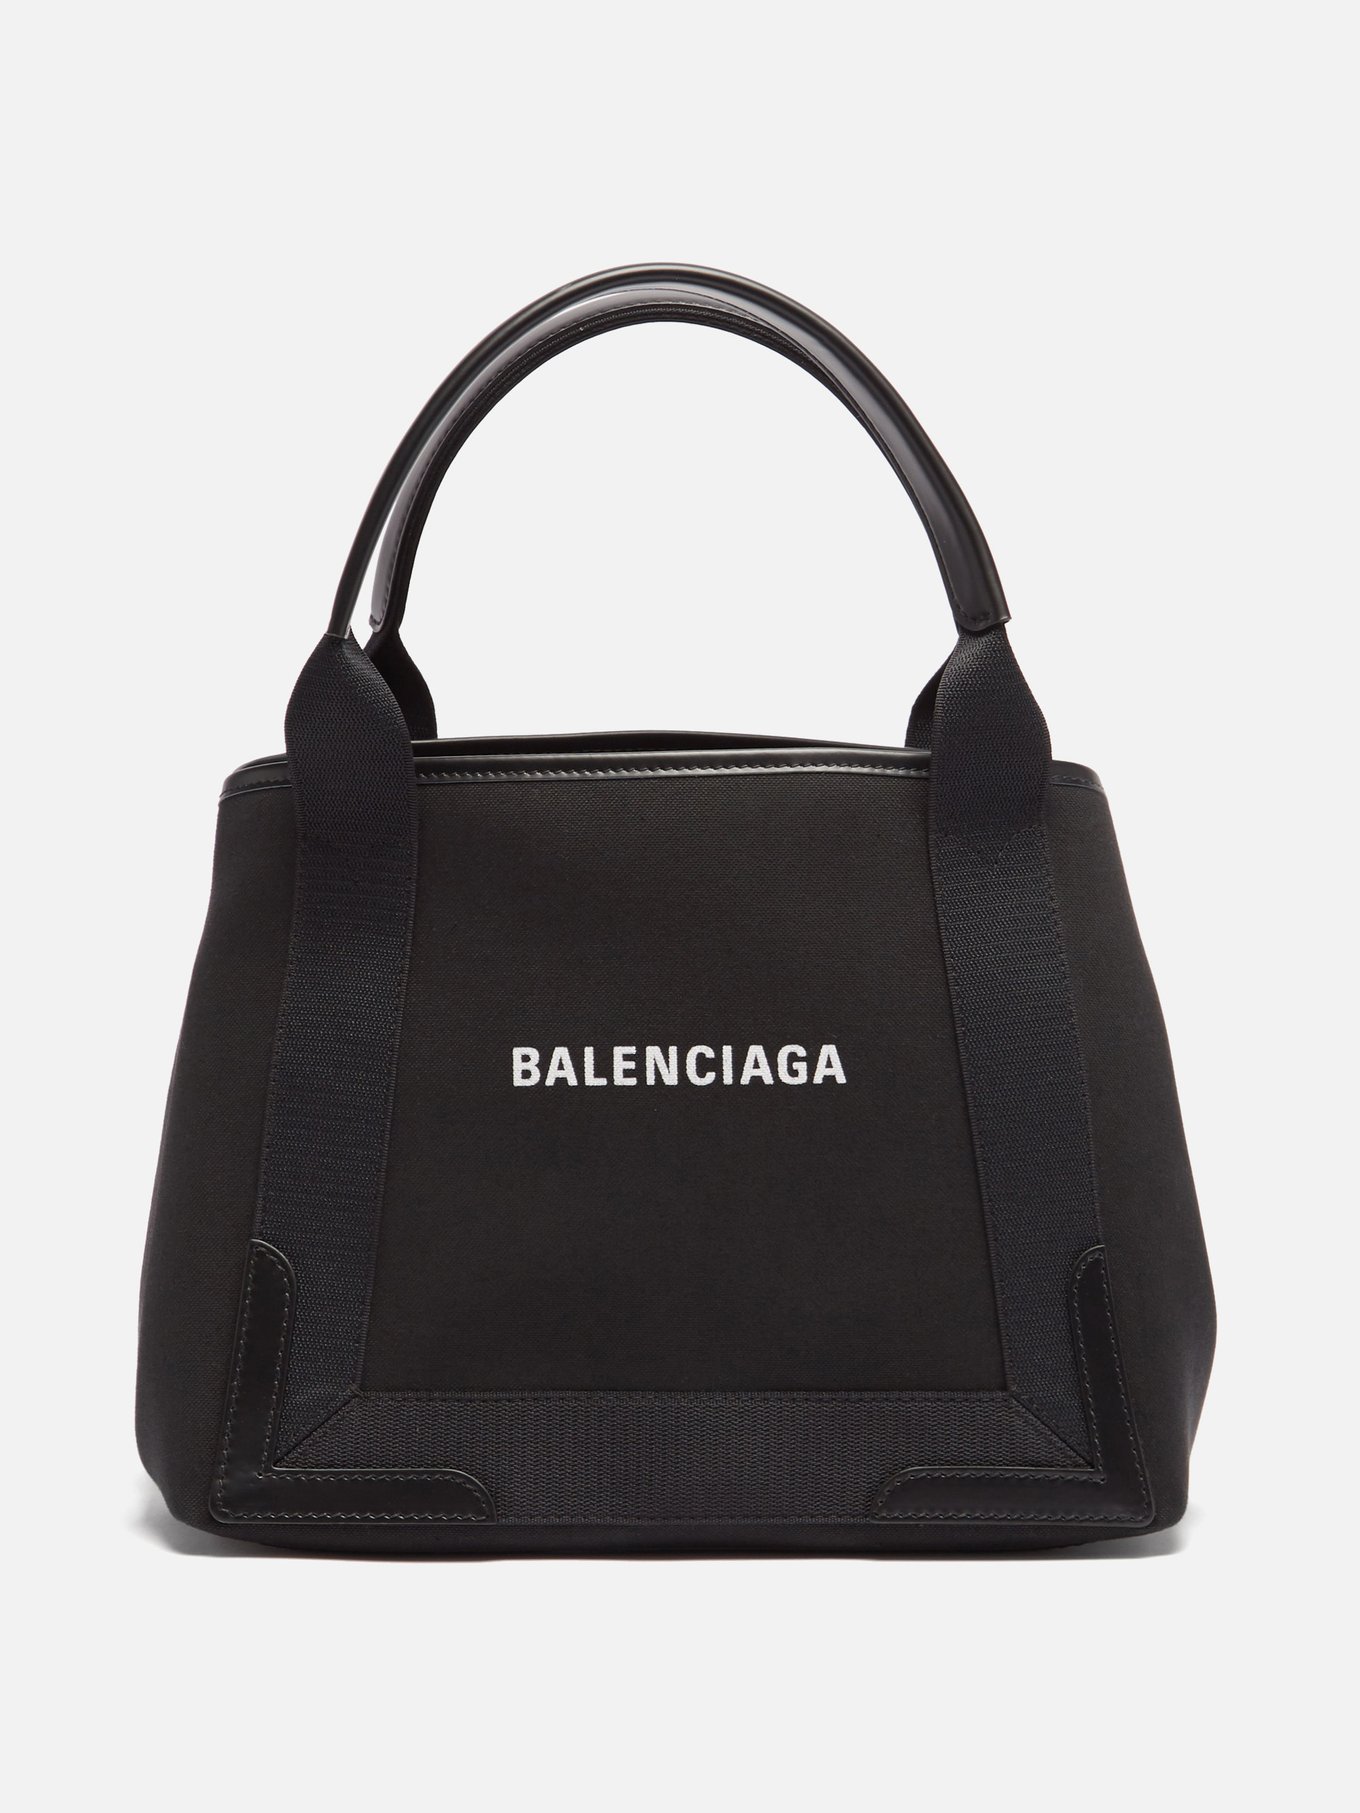 Balenciaga バレンシアガ カバス S キャンバストートバッグ